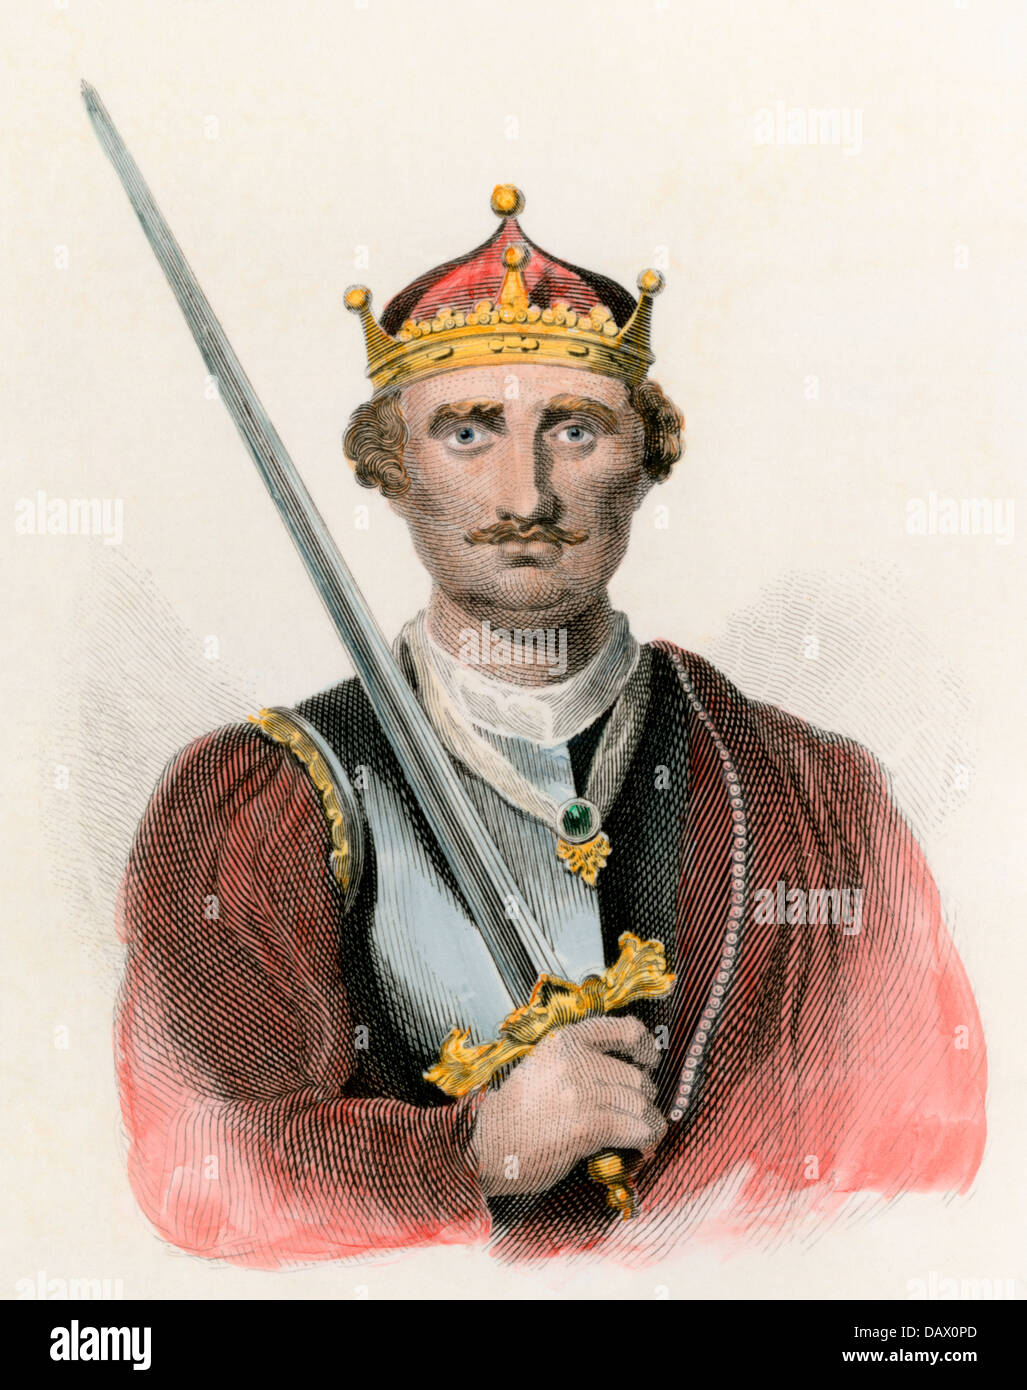 El rey de Inglaterra Guillermo I, el Conquistador, portando una espada. Grabado pintado a mano Foto de stock